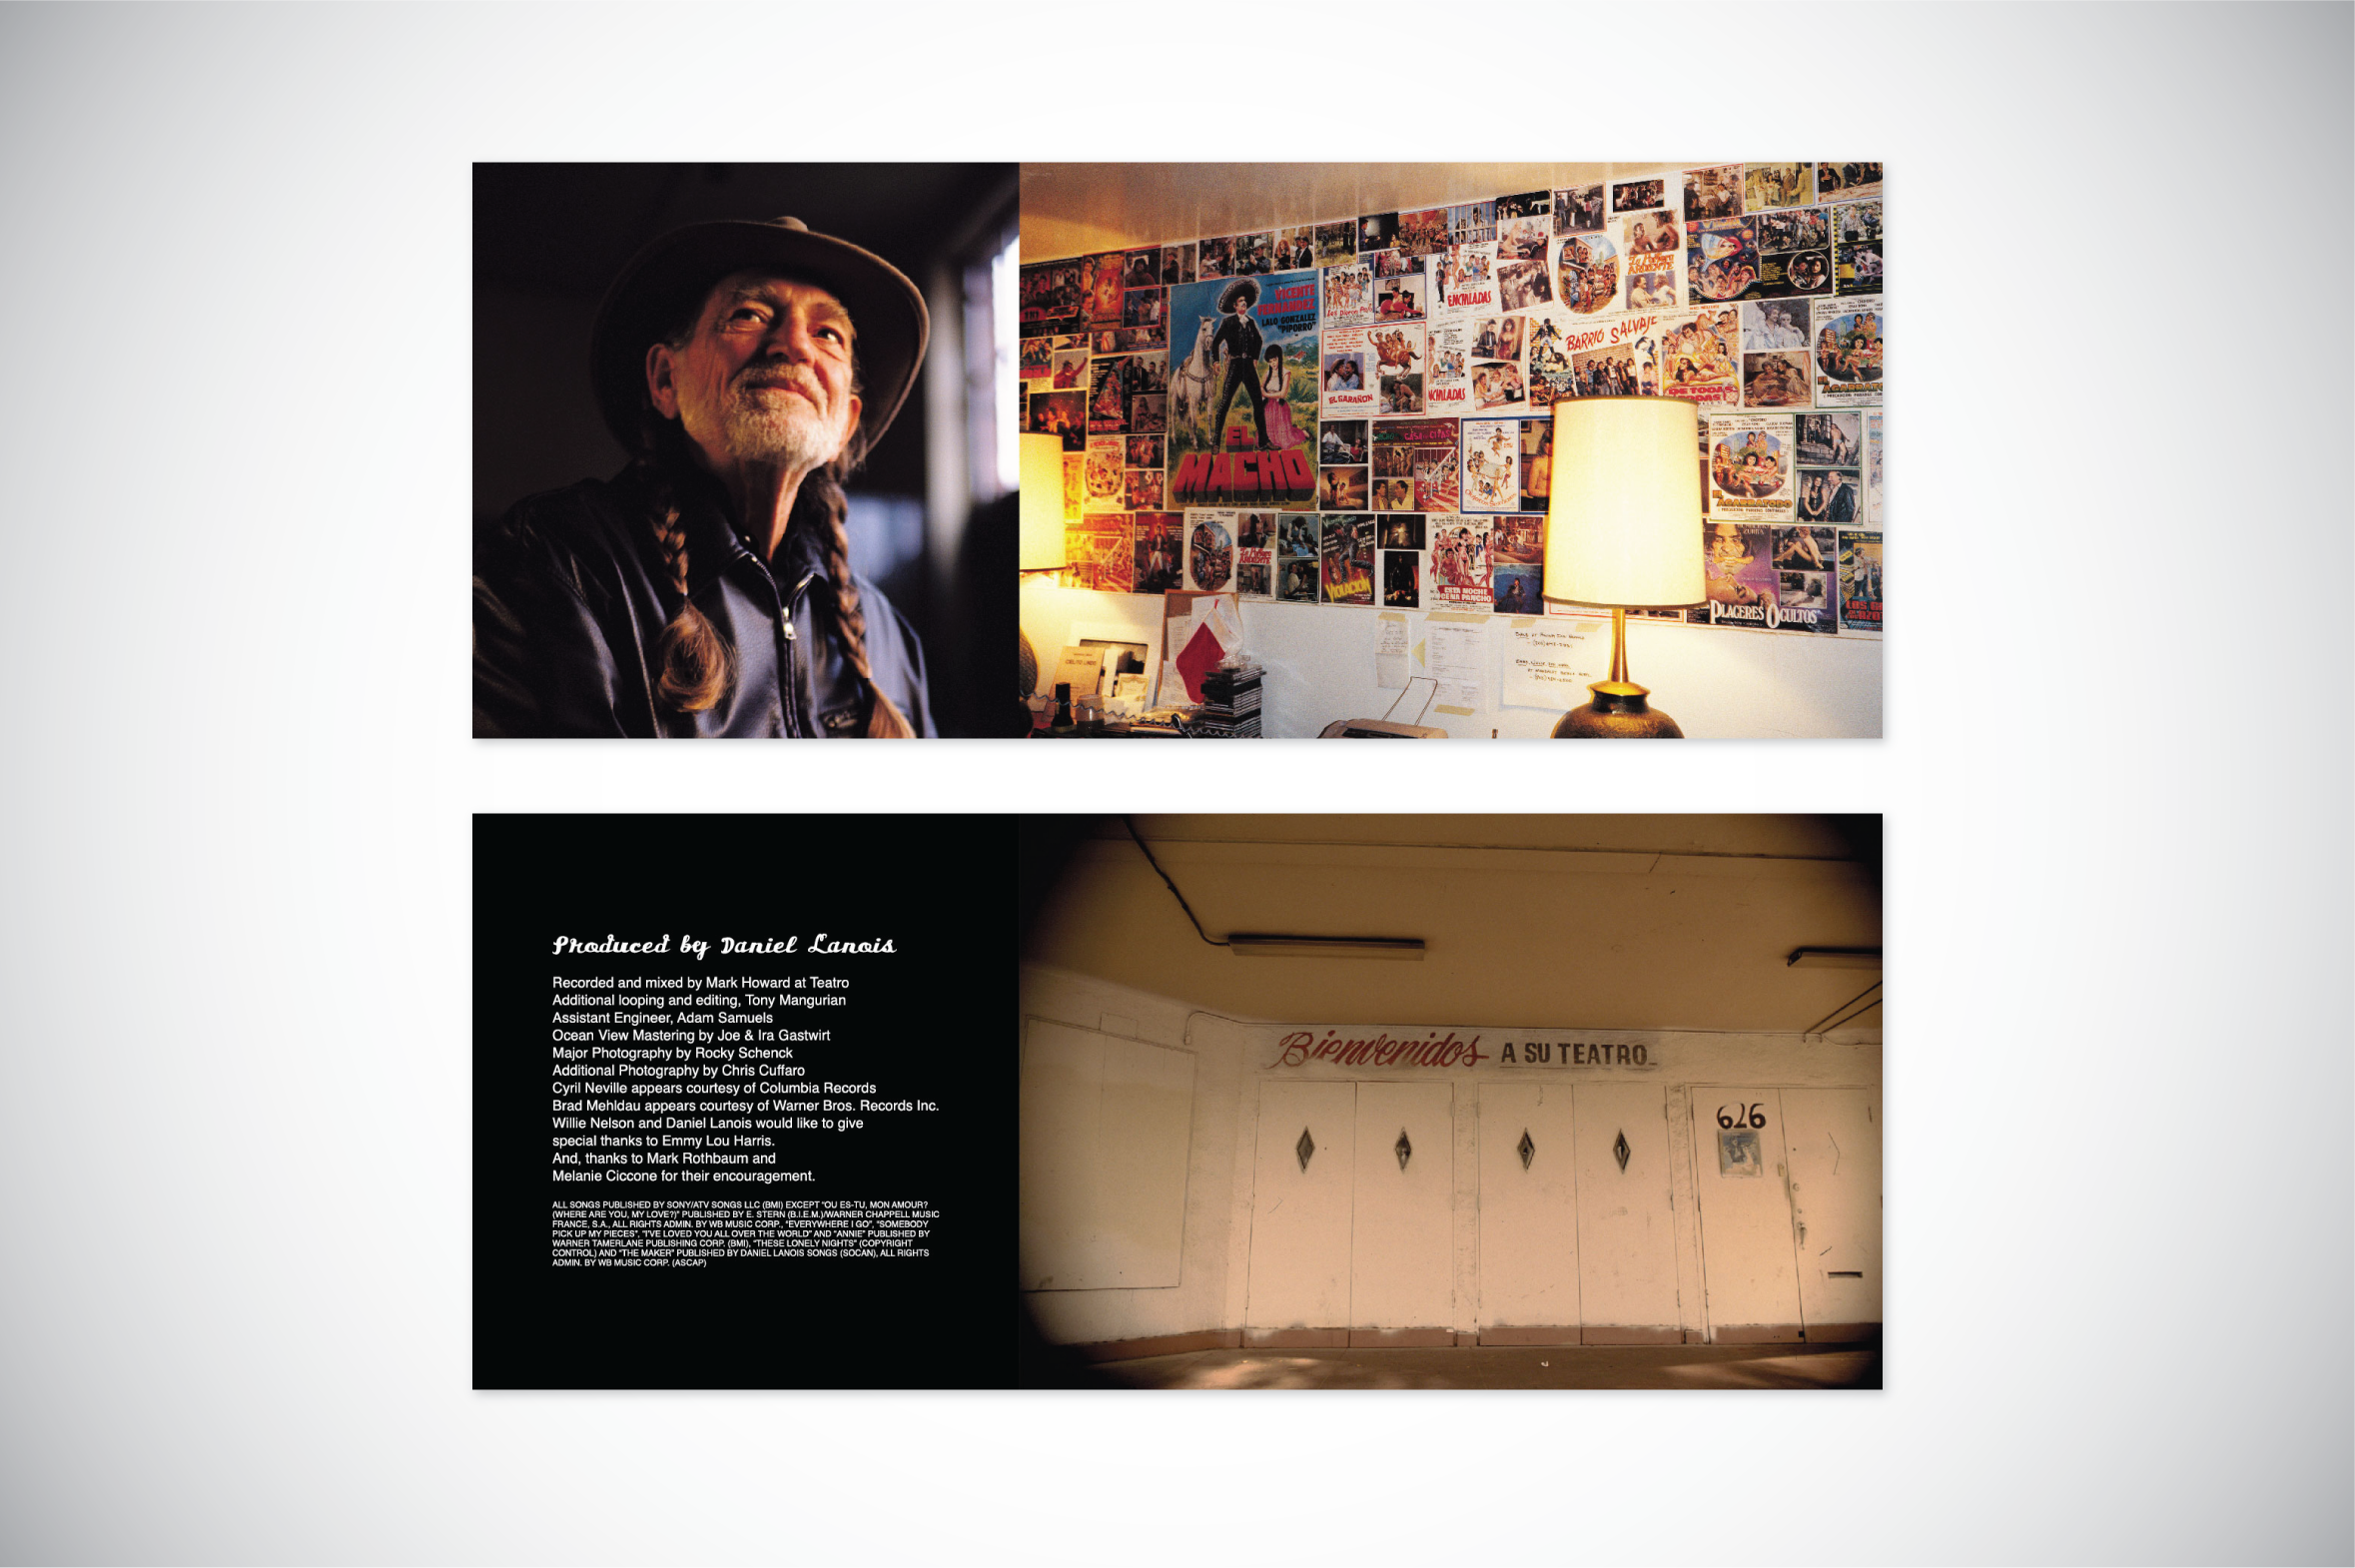 Daniel Lanois on Recording Willie Nelson's Landmark Album 'Teatro